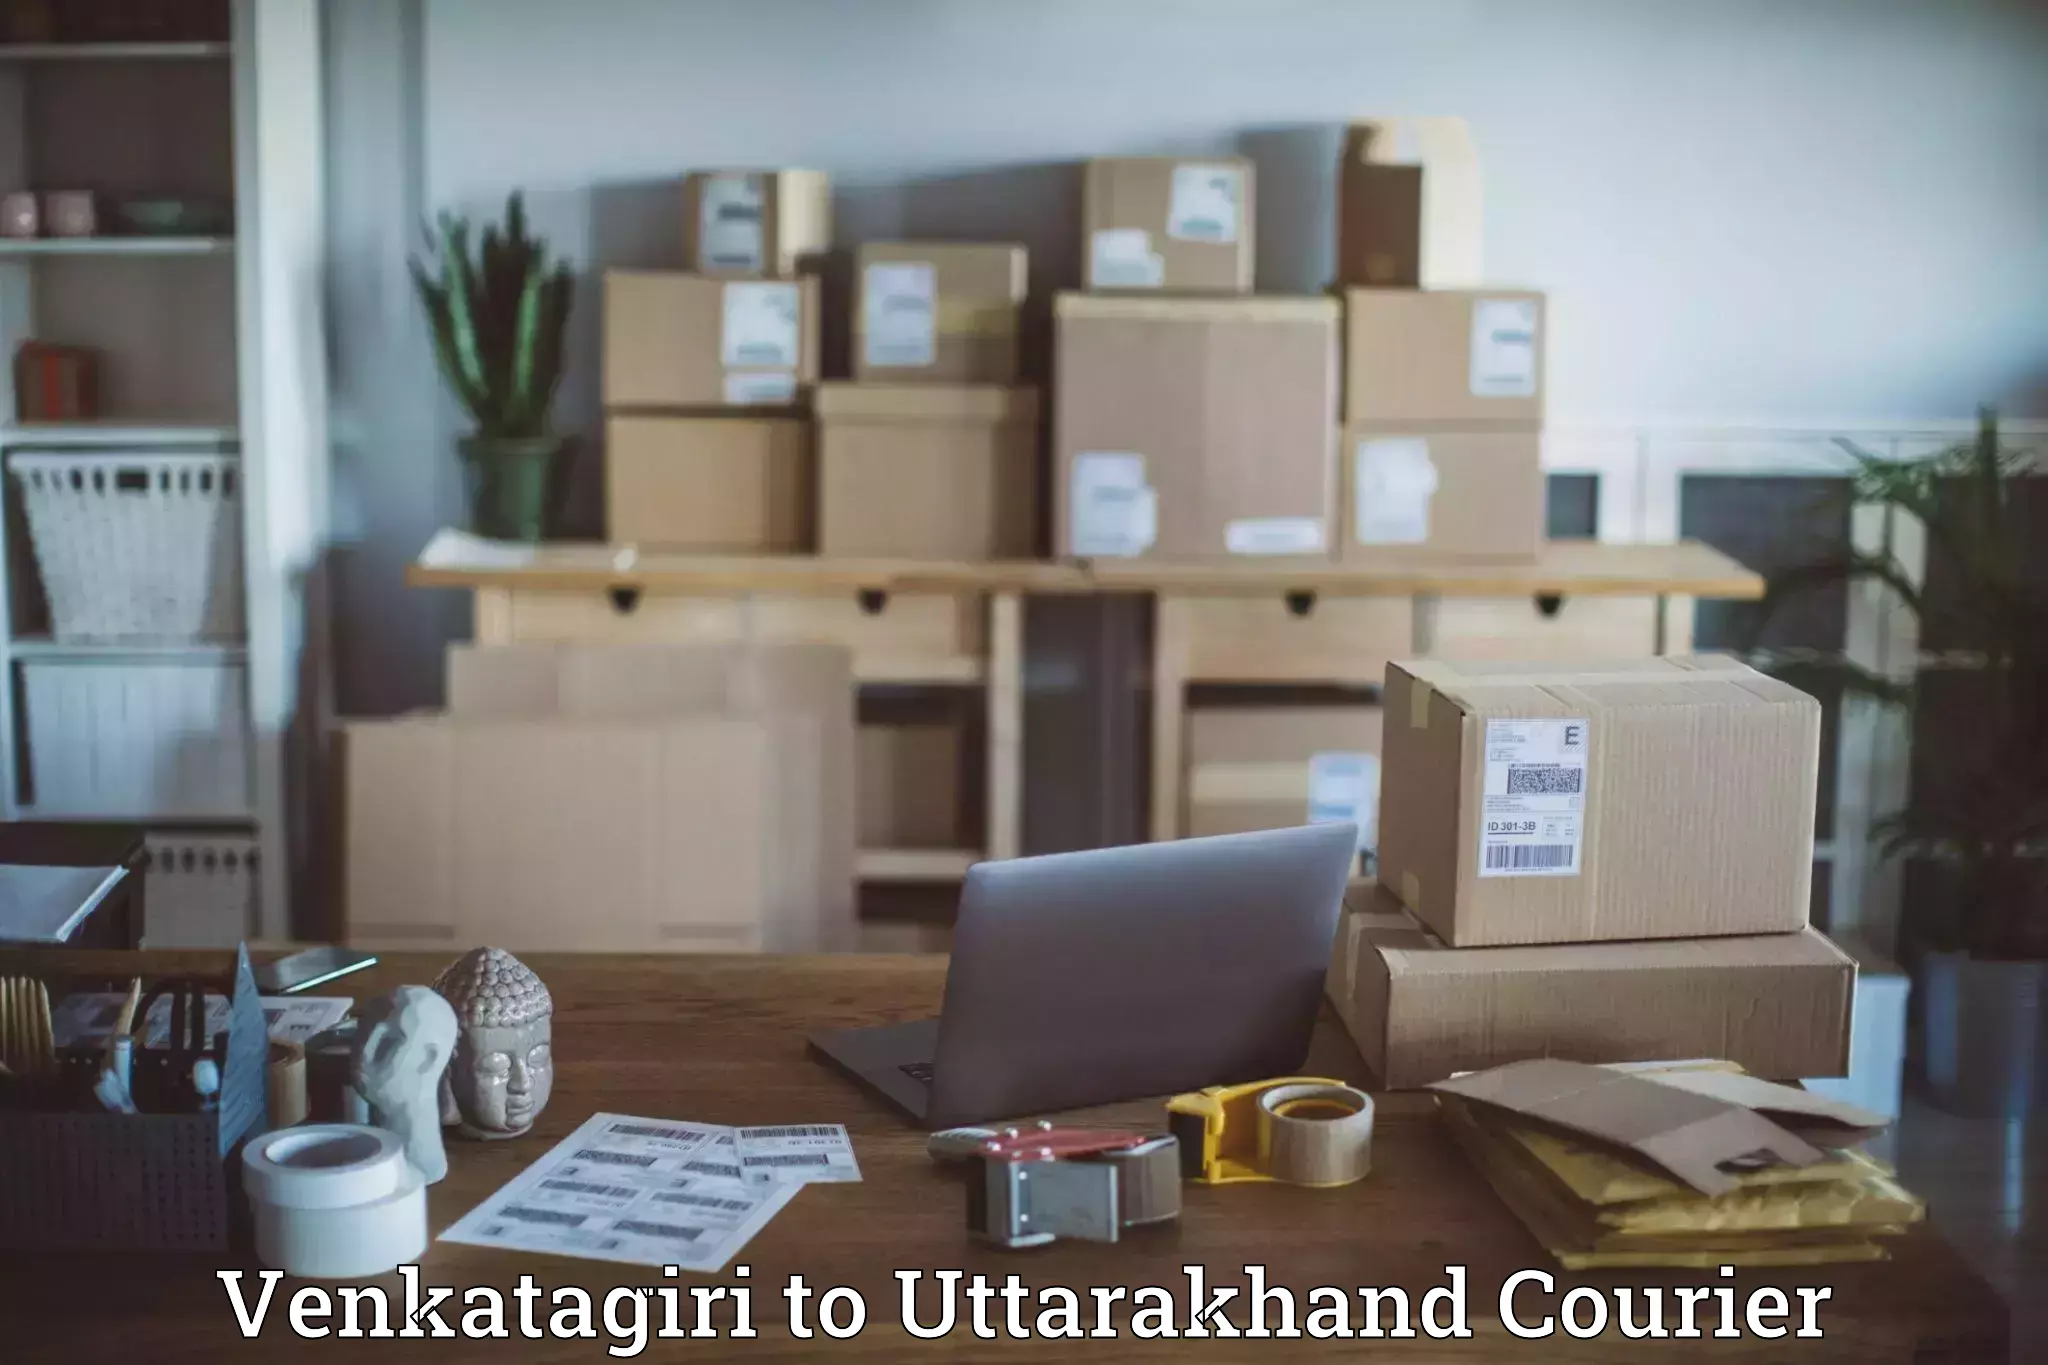 Urgent courier needs Venkatagiri to Rishikesh